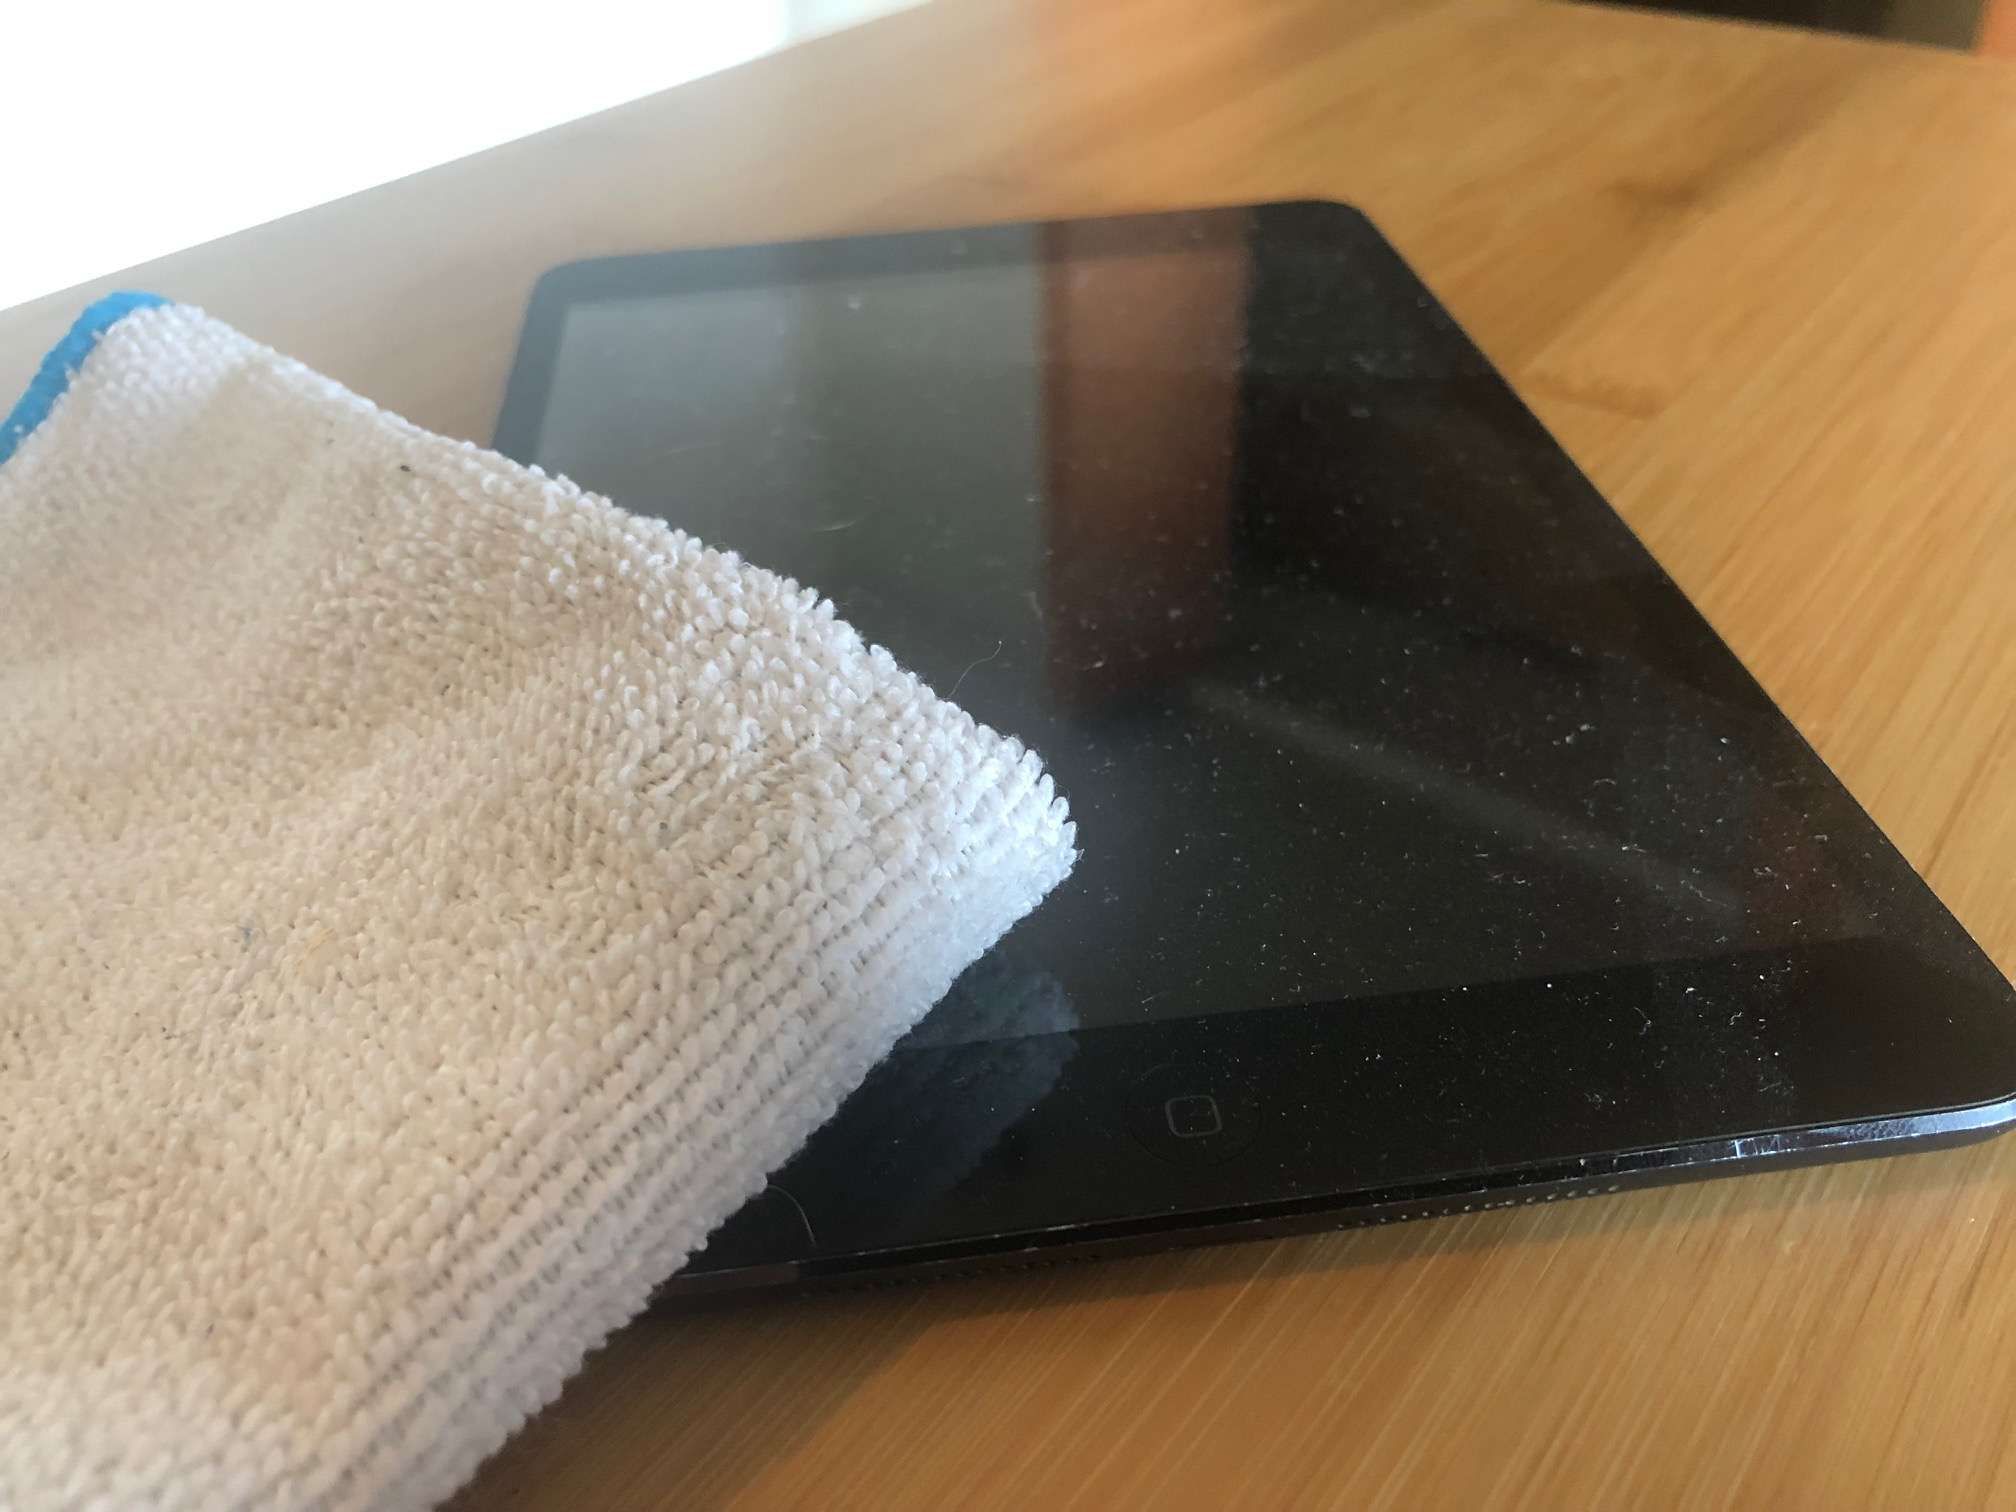 Салфетка из микрофибры на грязном iPad